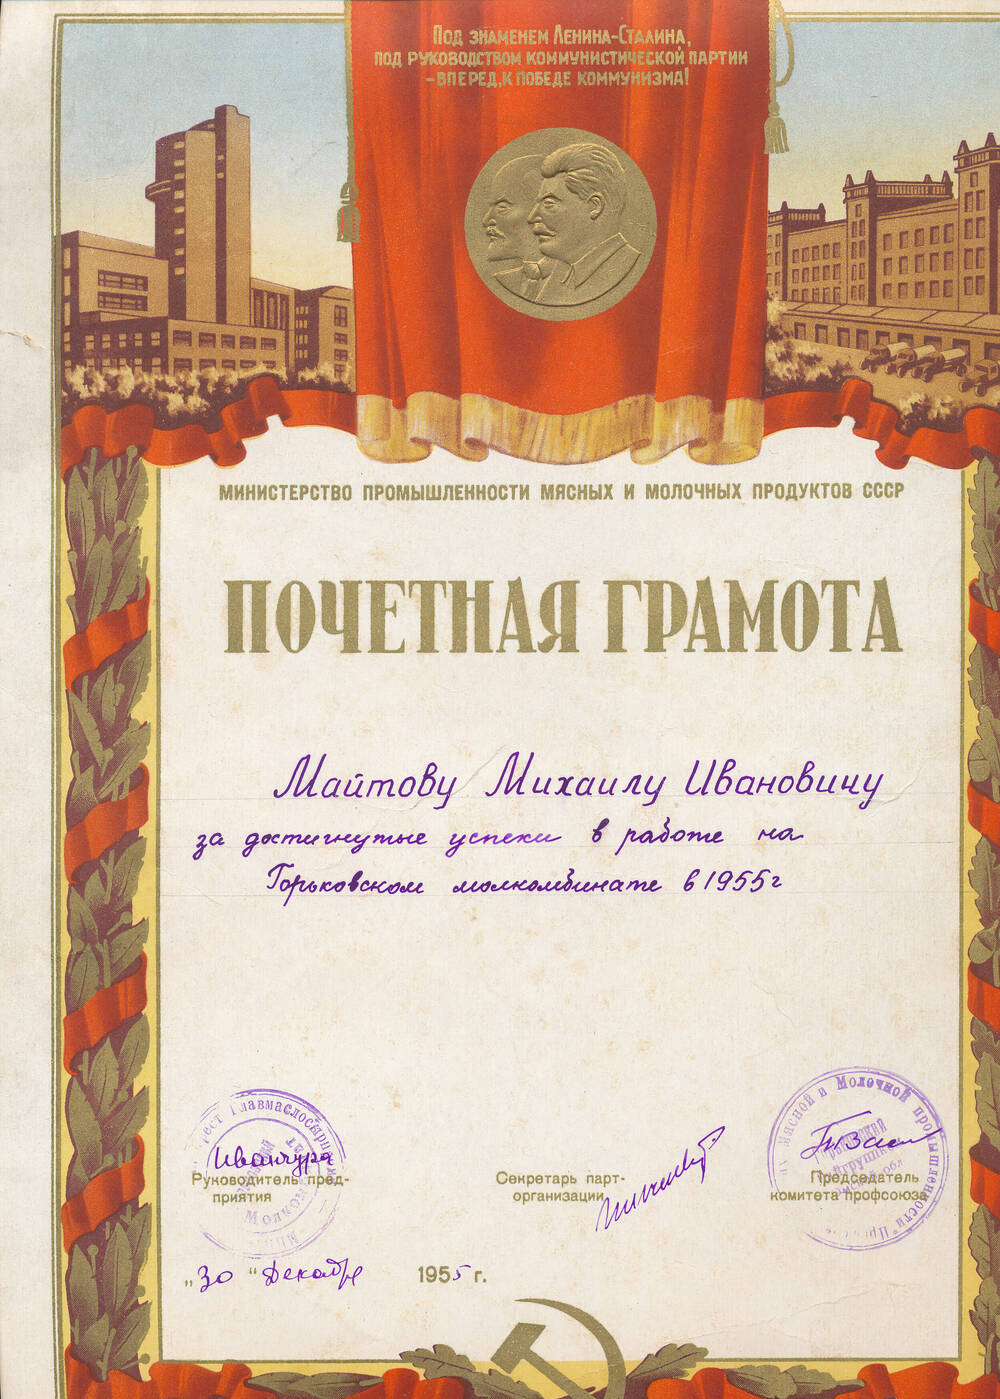 Почетная грамота Майтова Михаила Ивановича от администрации, профкома, парткома от 30.12.1955г. за достигнутые успехи в работе на МСК